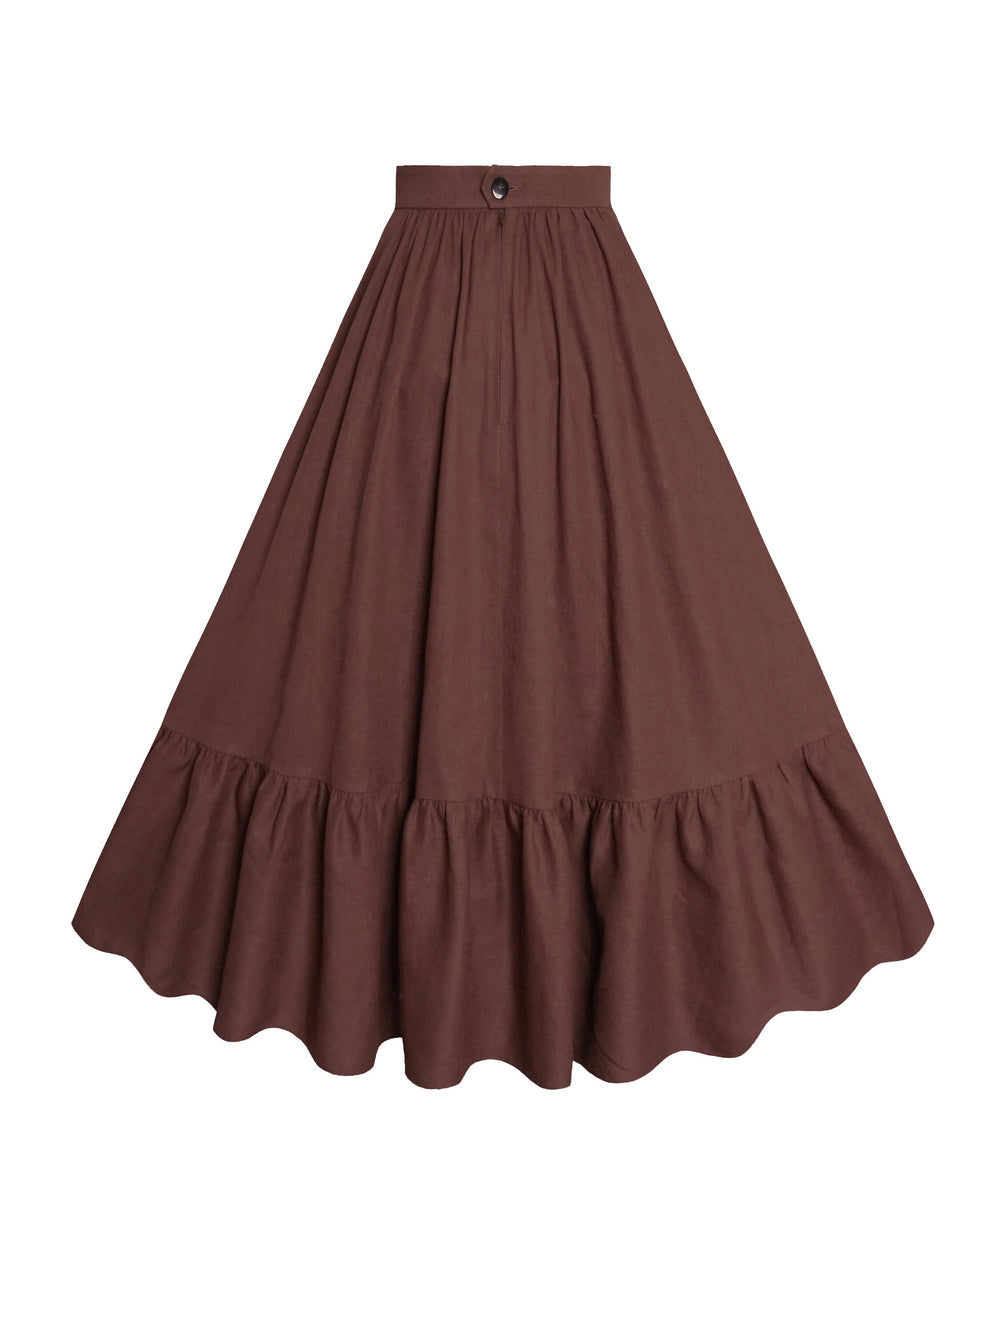 MTO - Rosita Skirt in Walnut Linen